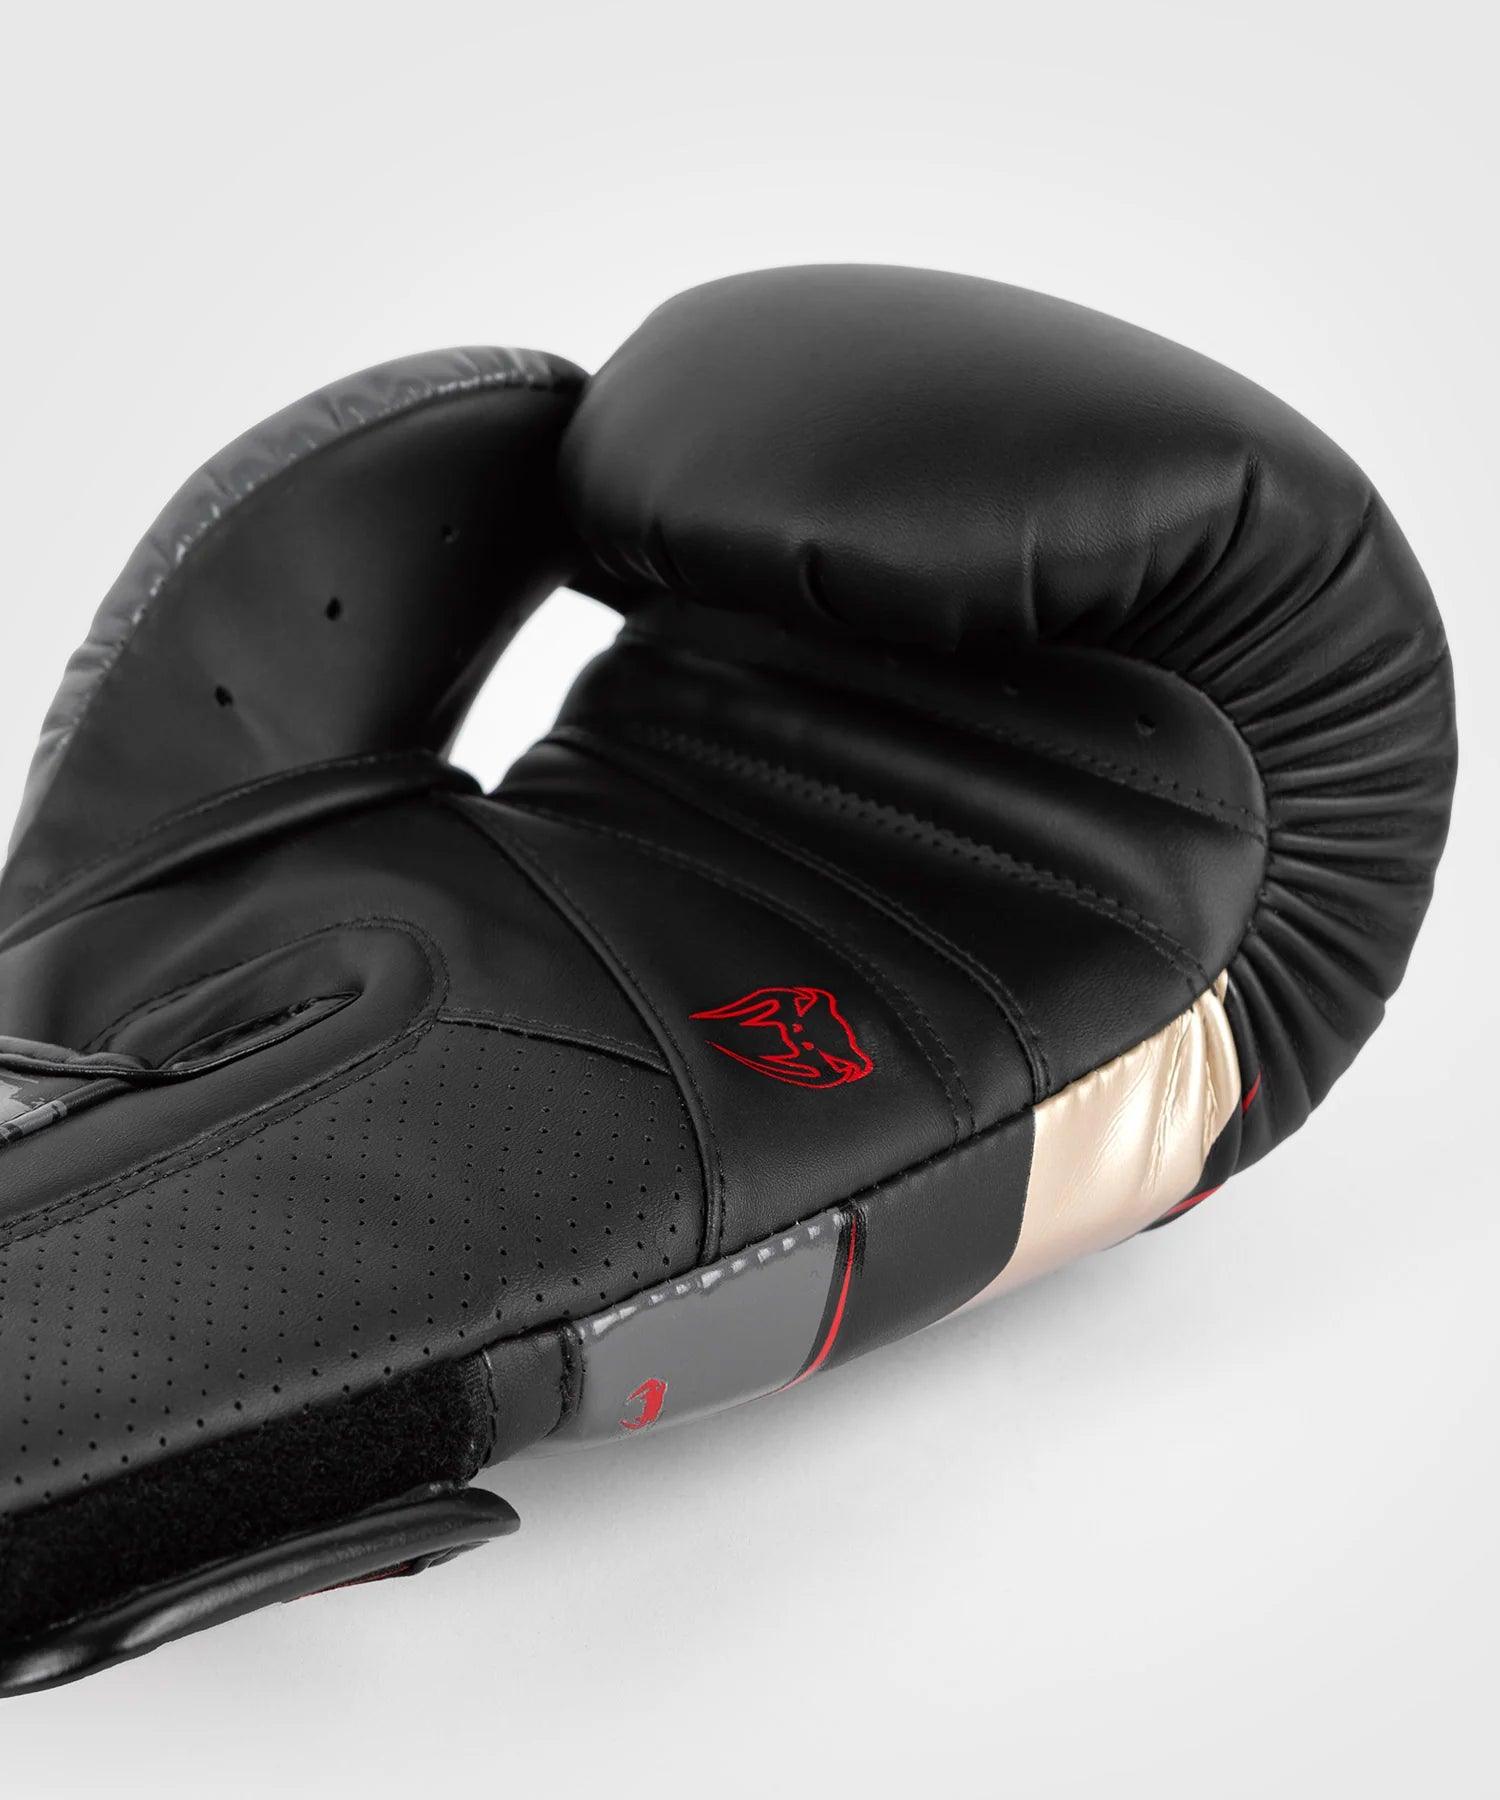 Gants de Boxe Venum Elite Evo - Boutique des Arts Martiaux et Sports de Combat